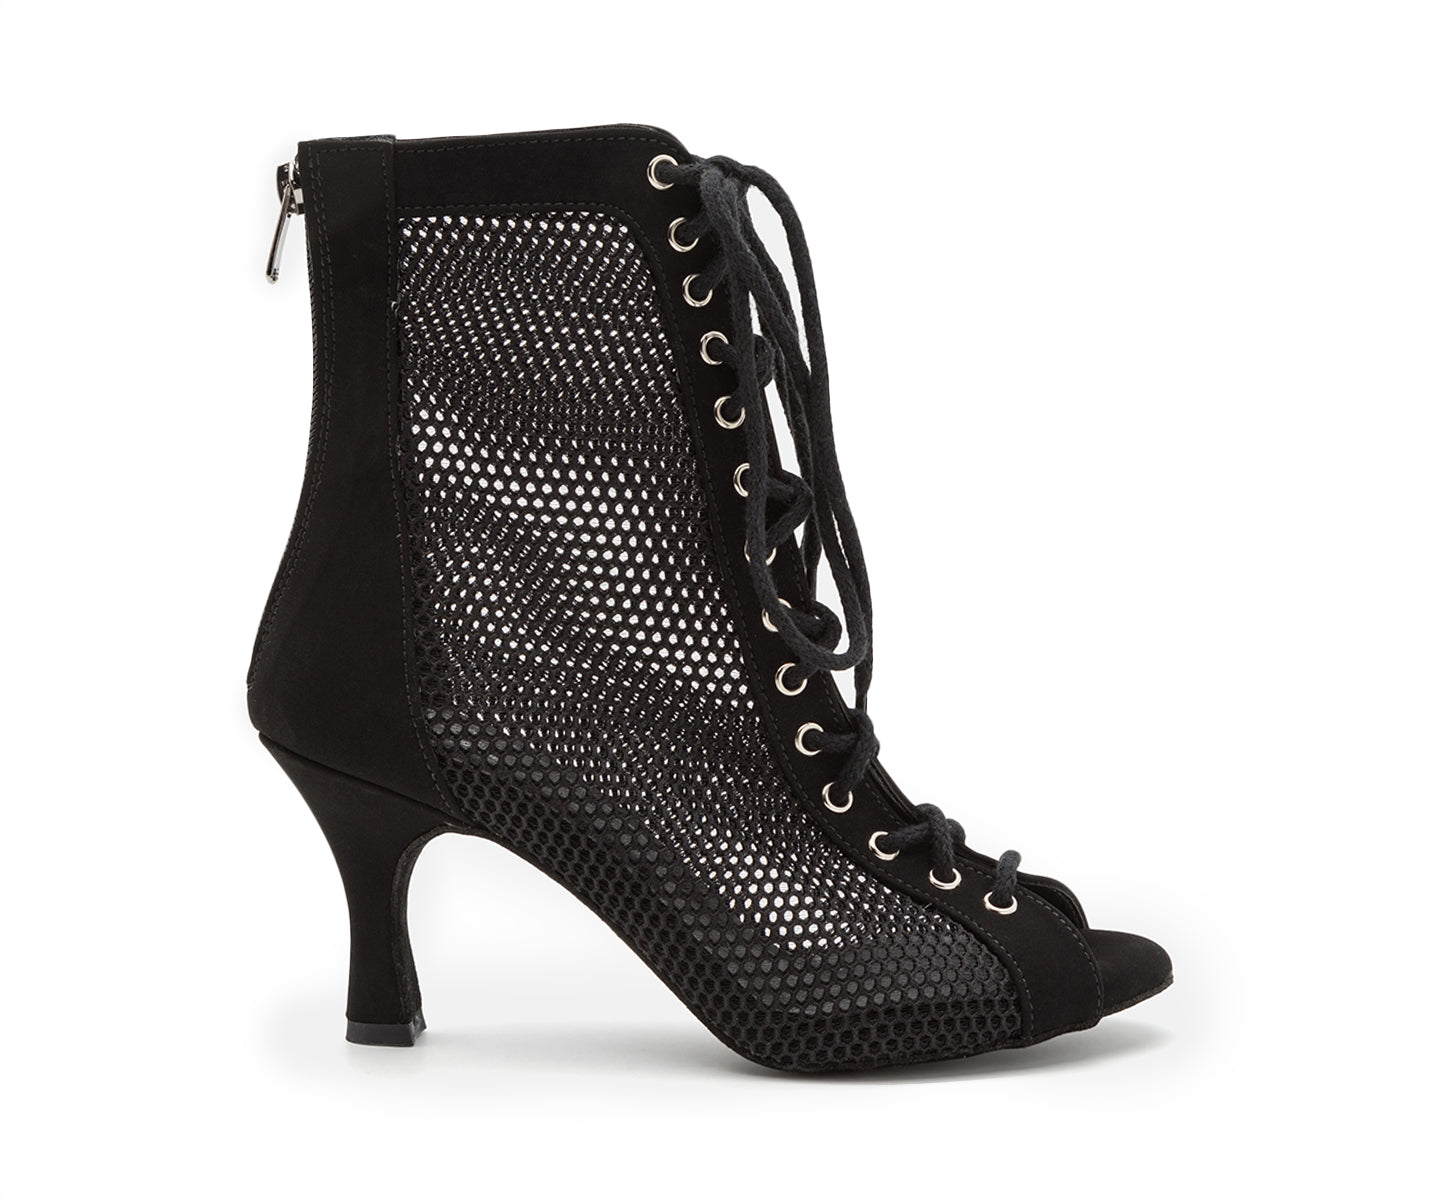 Halley Heels Dance Dance Shoes in Black